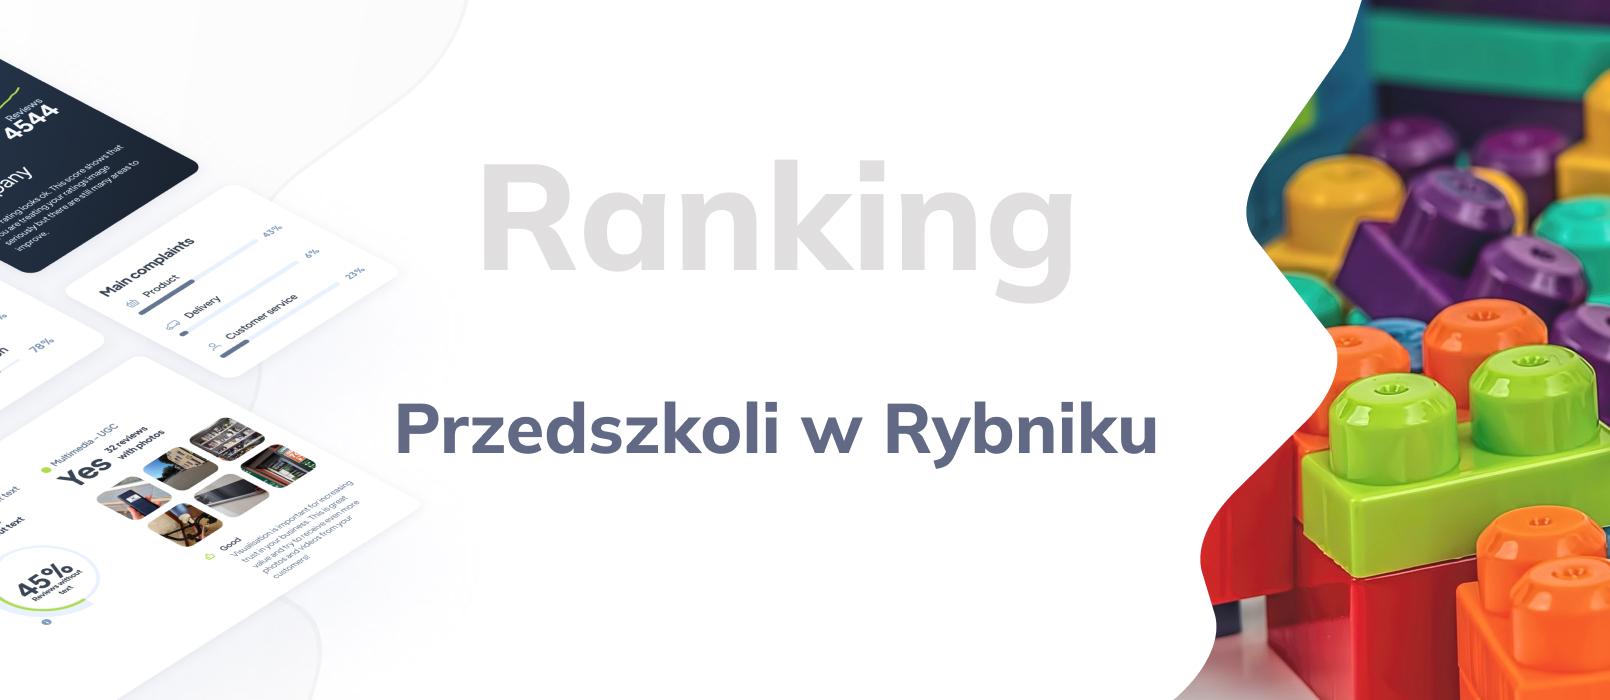 Przedszkola w Rybniku - ranking TOP 10